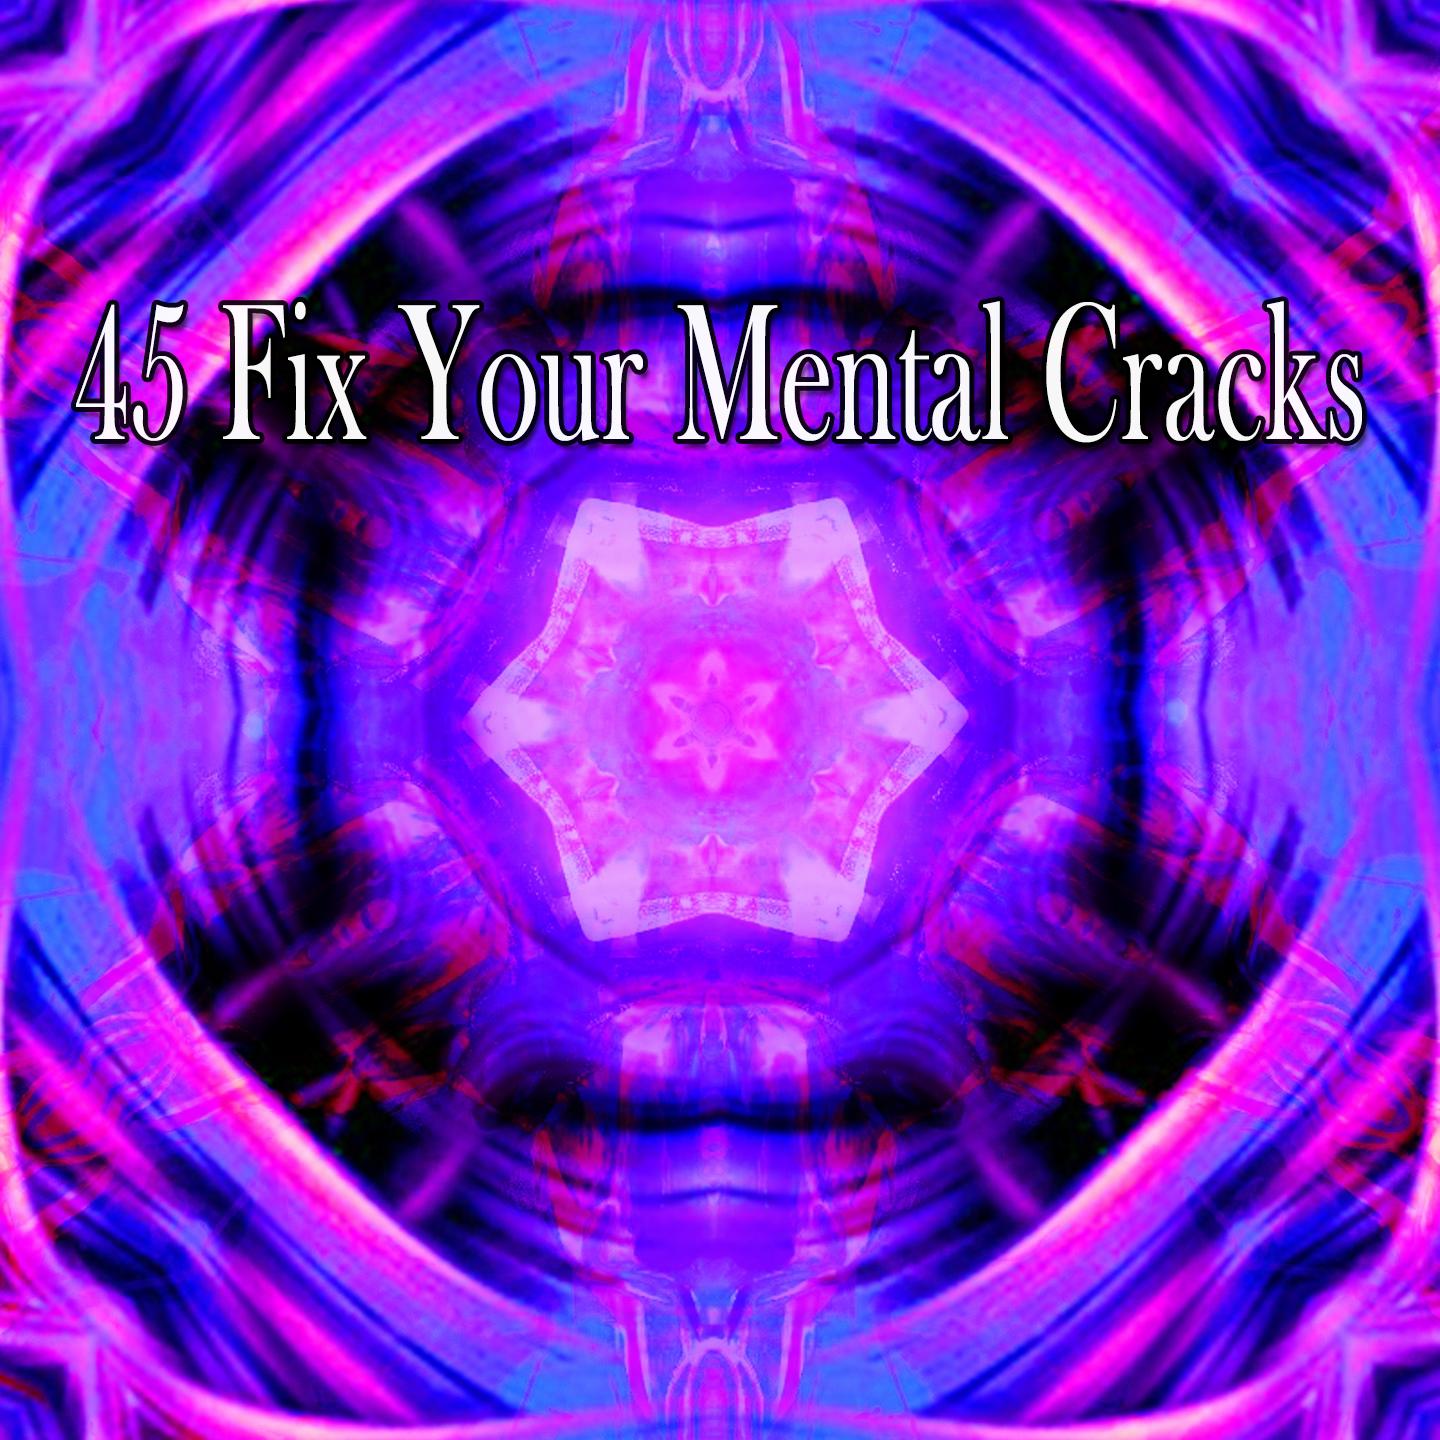 45 Fix Your Mental Cracks